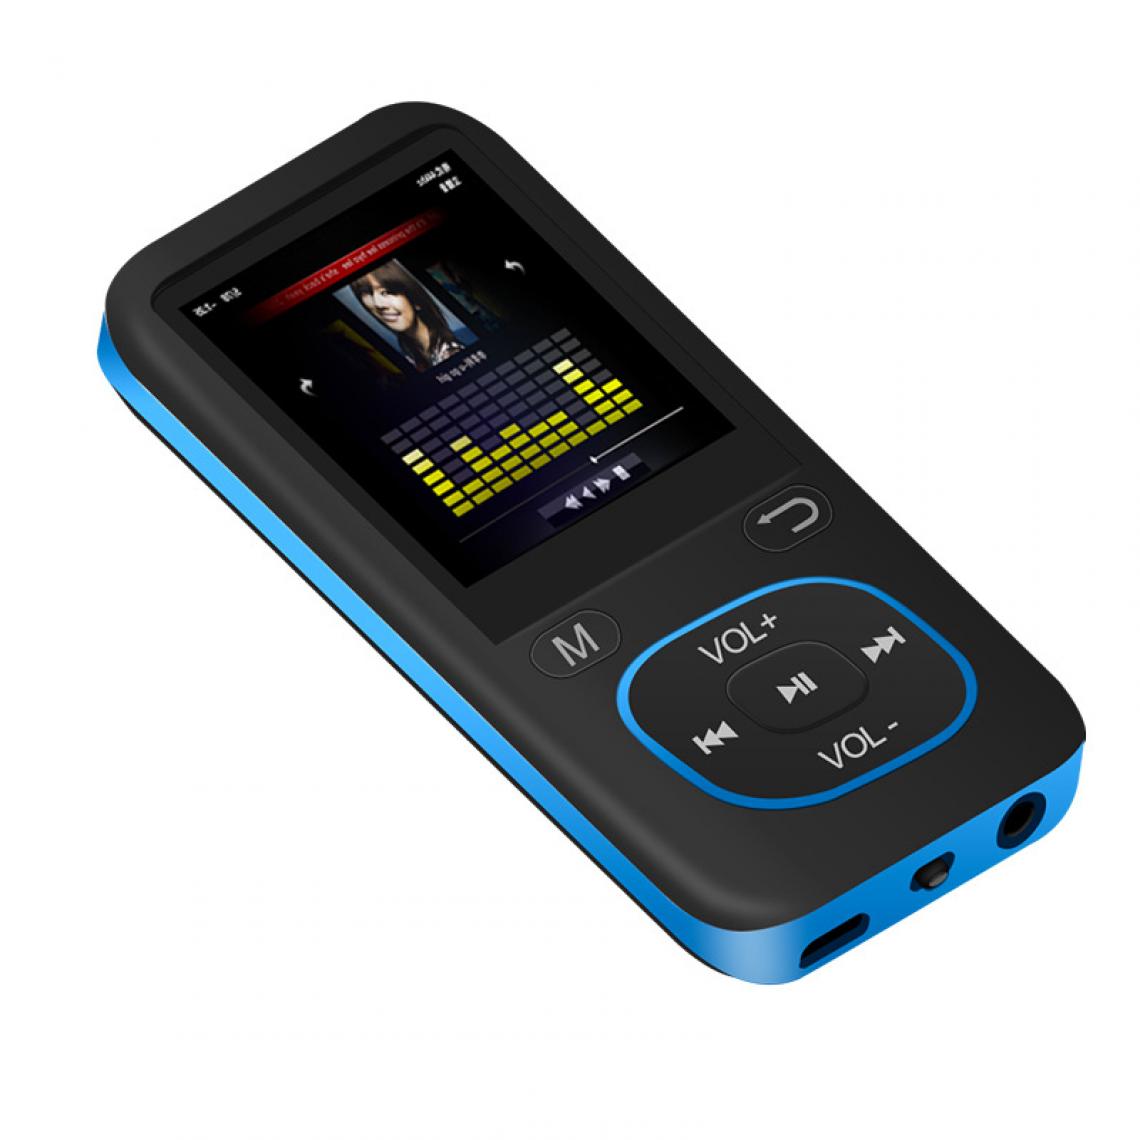 Universal - Magnétophone numérique professionnel haute définition réduction du bruit musique MP3 lecteur vidéo FM radio livre électronique enregistreur audio | Magnétophone numérique (bleu) - Enregistreur audio numérique